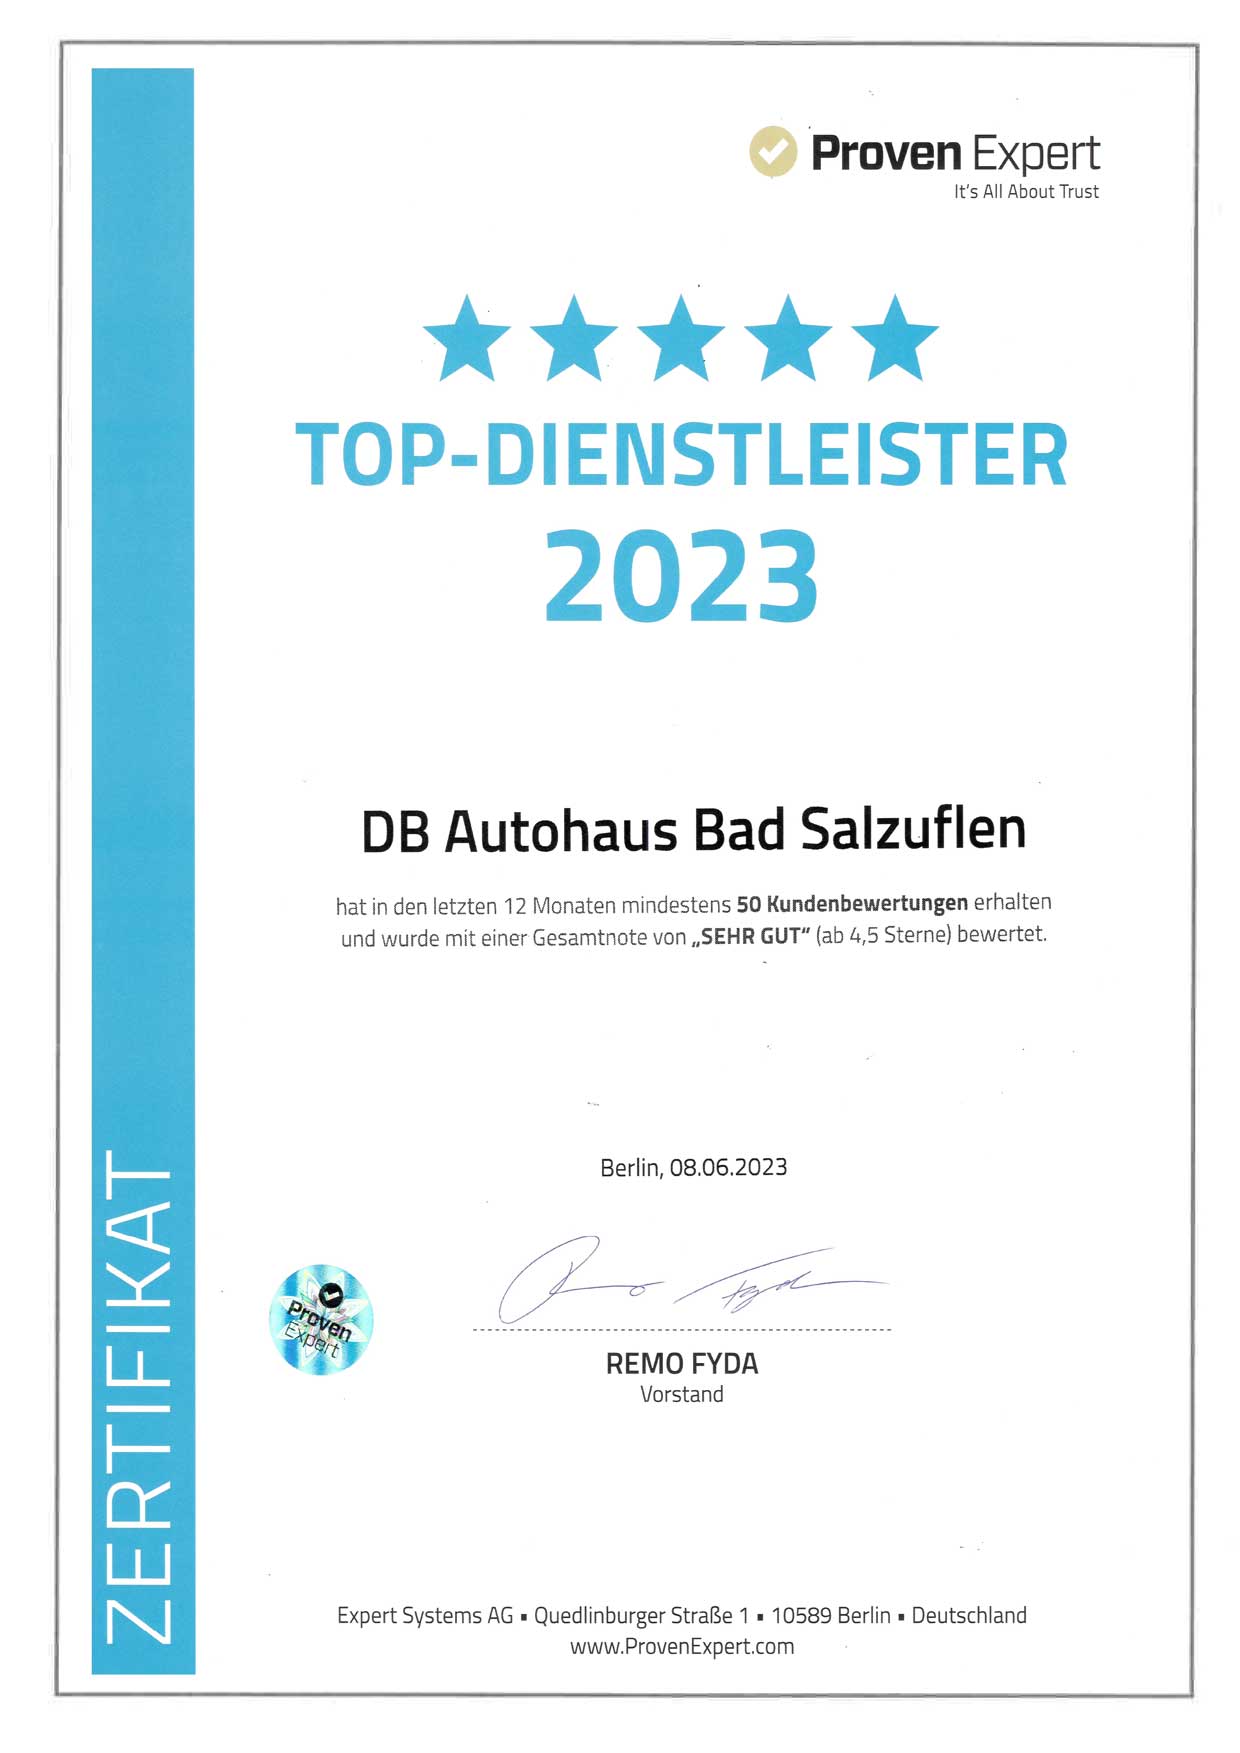 DB Autohaus Bad Salzuflen wurde als Top-Dienstleister von Proven Expert ausgezeichnet